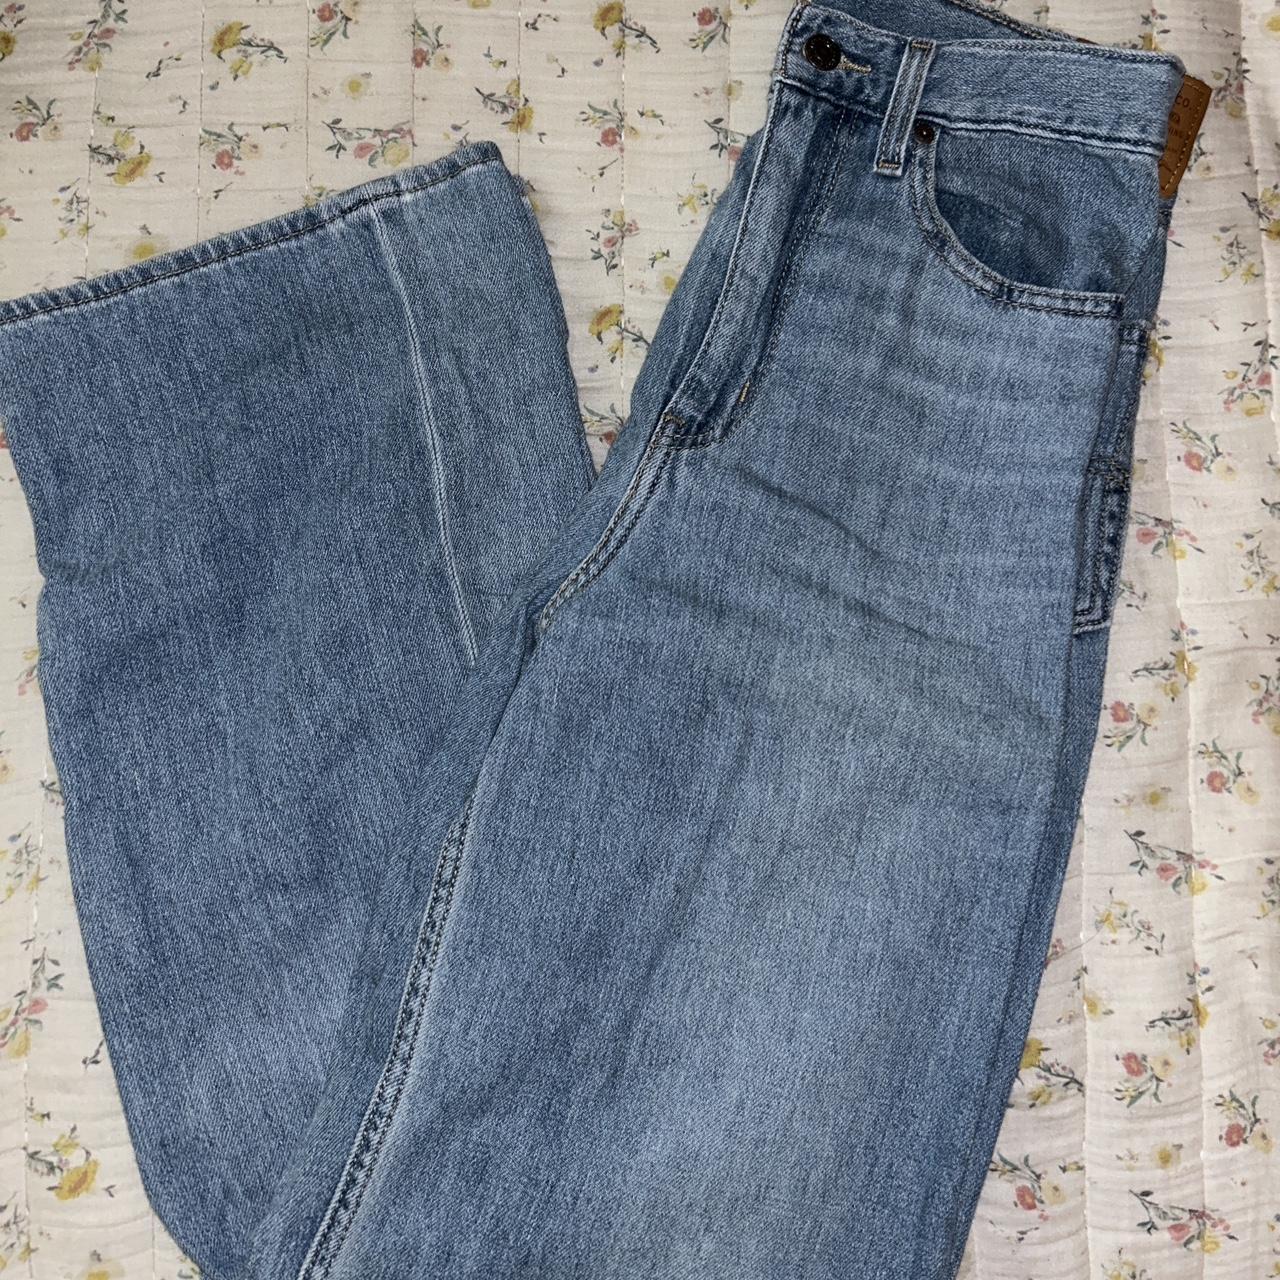 Levis wide leg jeans - Depop